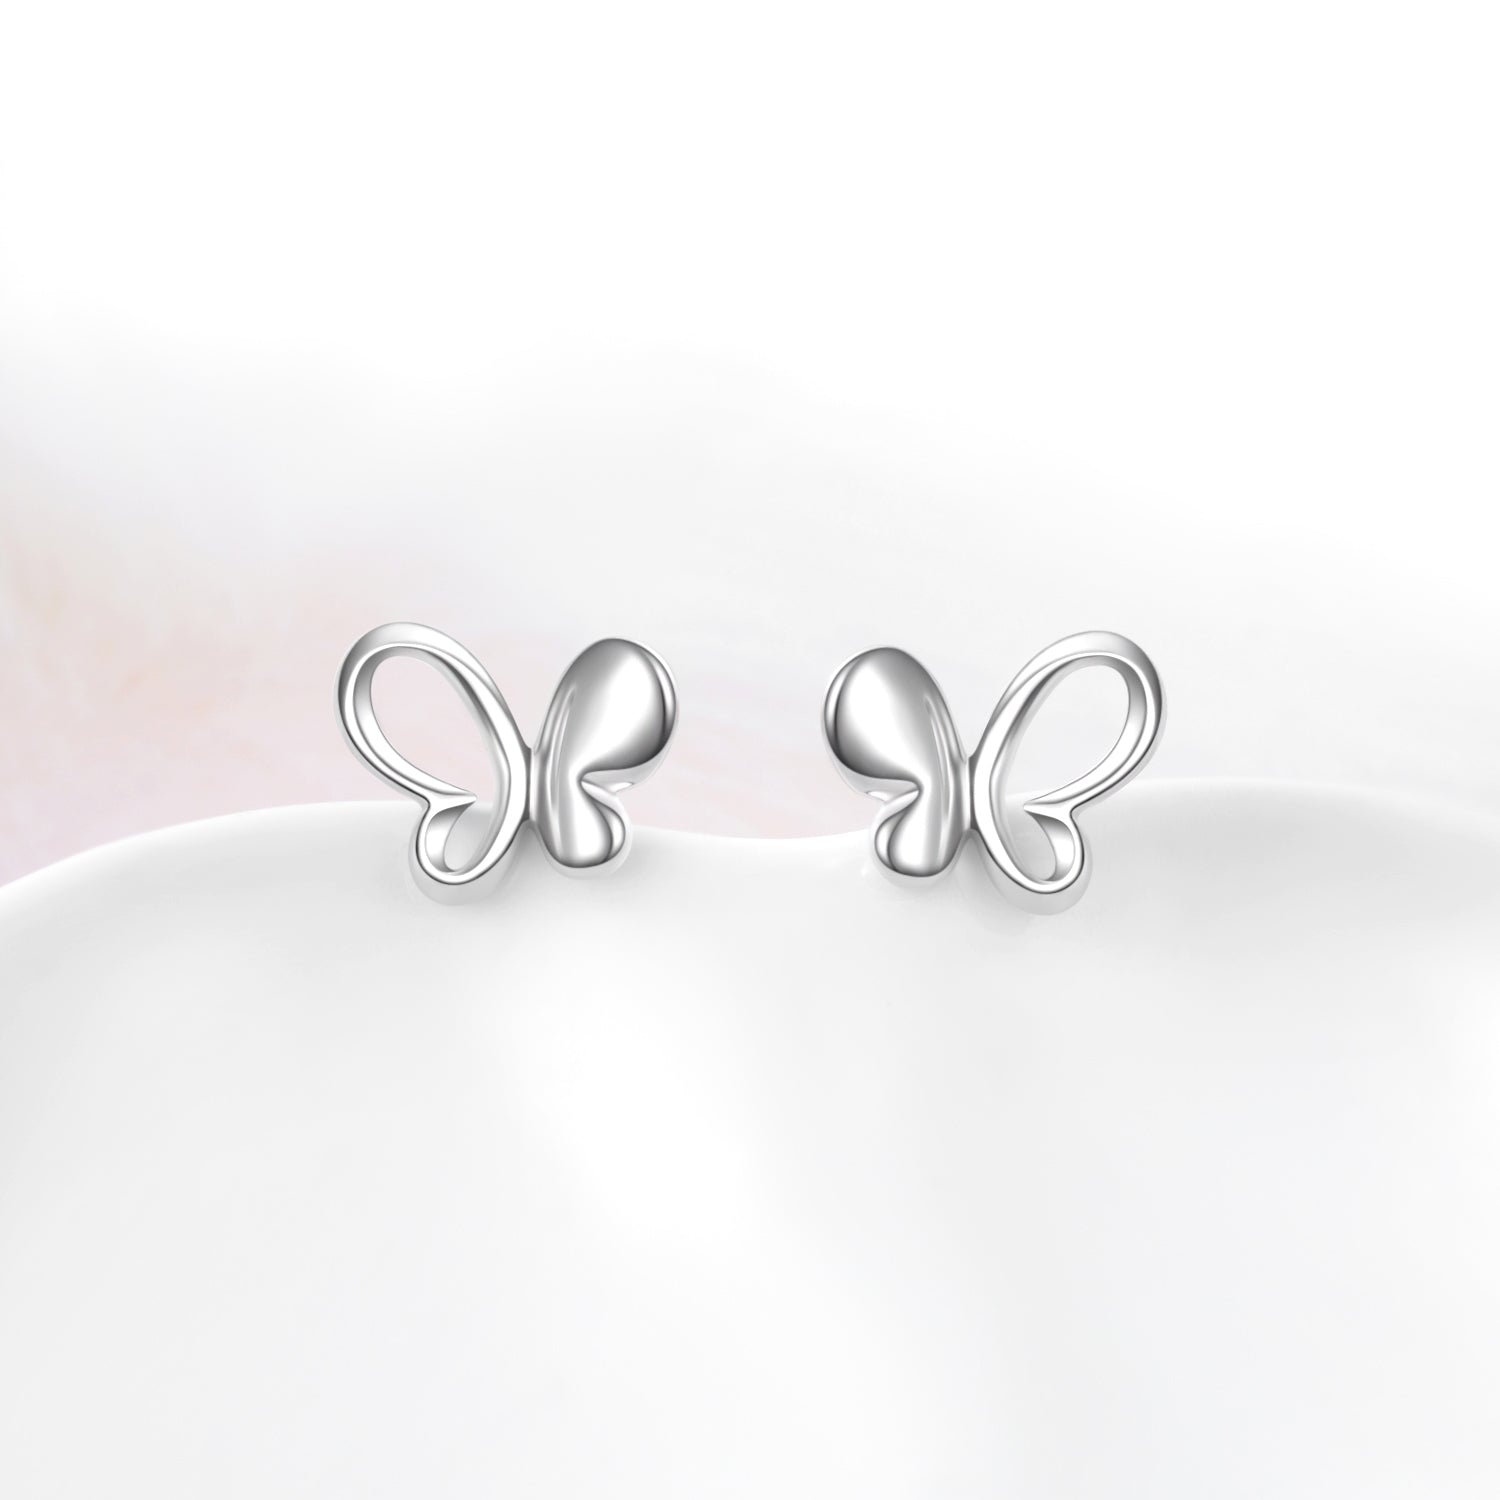 Butterfly Stud Earrings New Fashion Sweet Jewelry 925 Sterling Silver Earrings For Girls